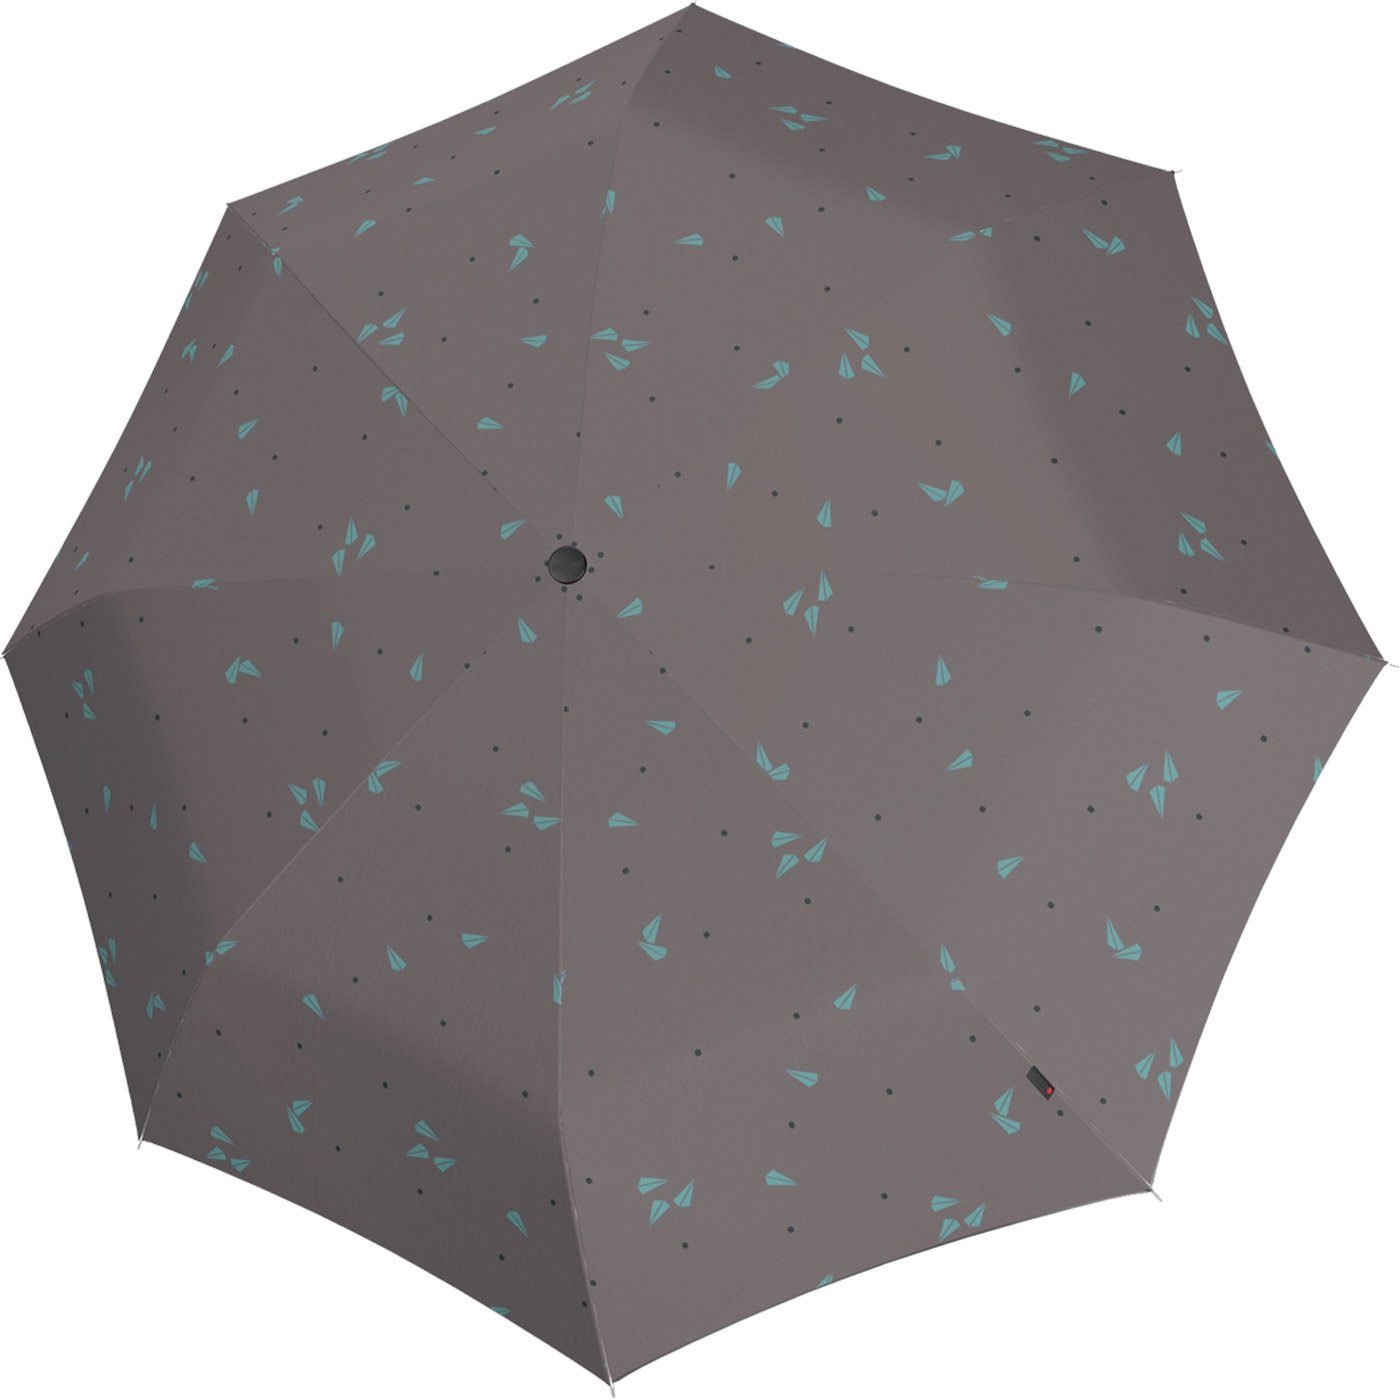 Knirps® Taschenregenschirm A.050 Medium grau 2Fly, Manual stabil und - leicht